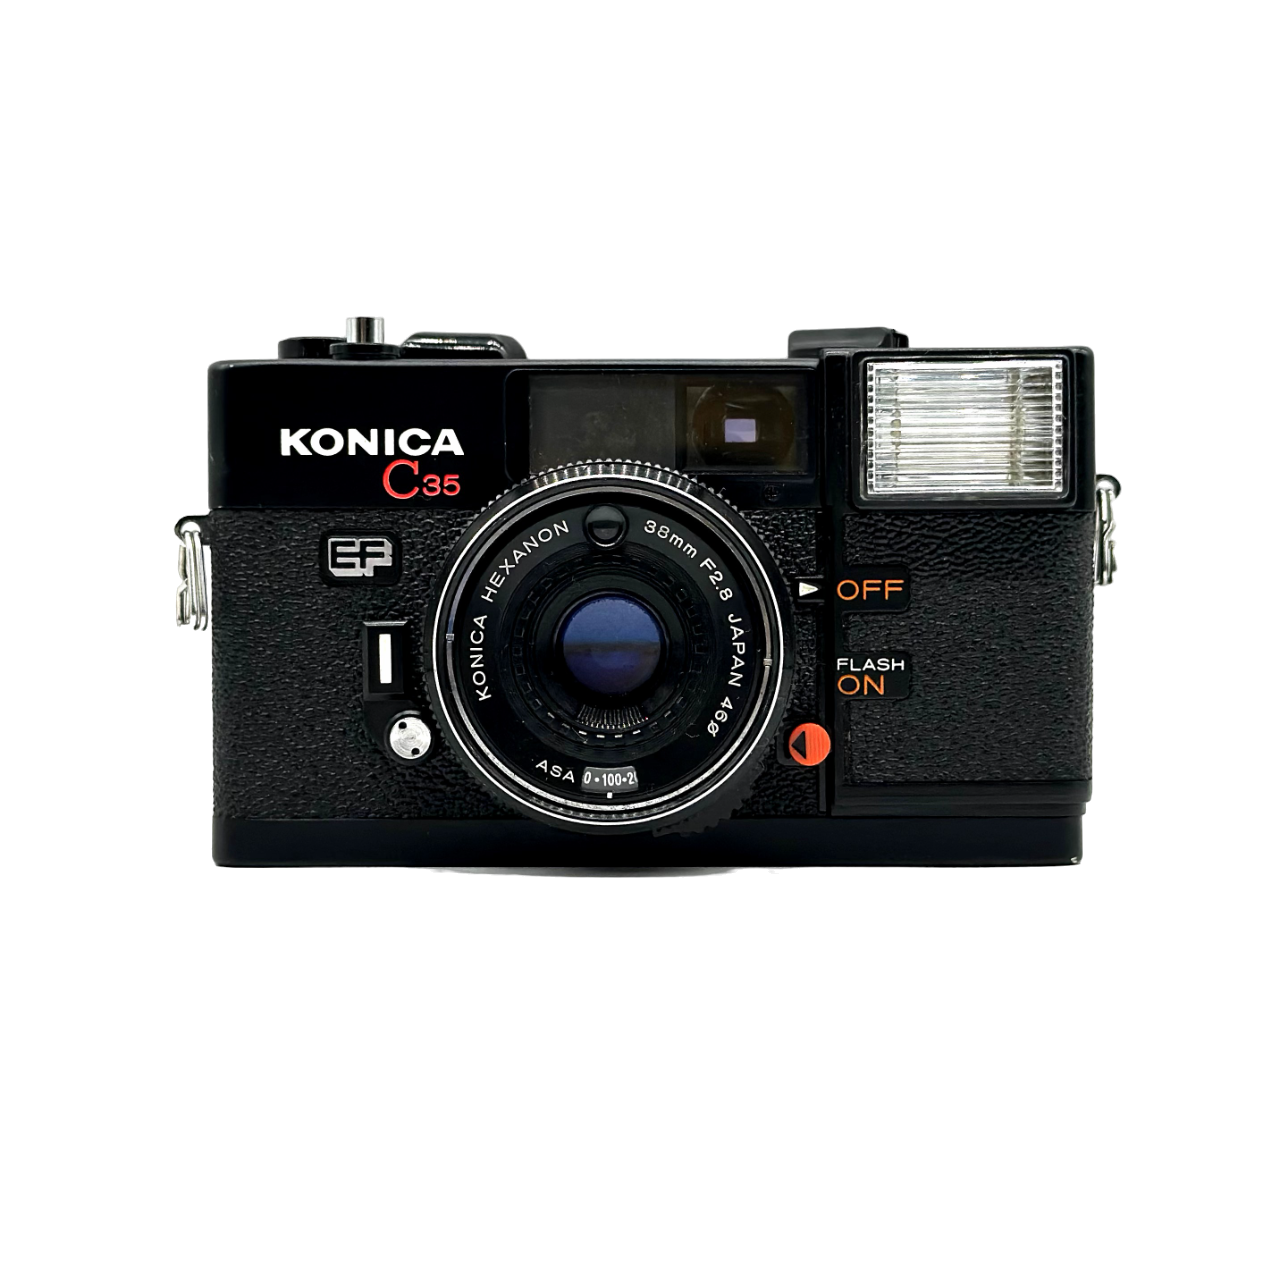 ピッカリ! コニカ KONICA C35 EF 極上美品 整備品 フィルムカメラ極上